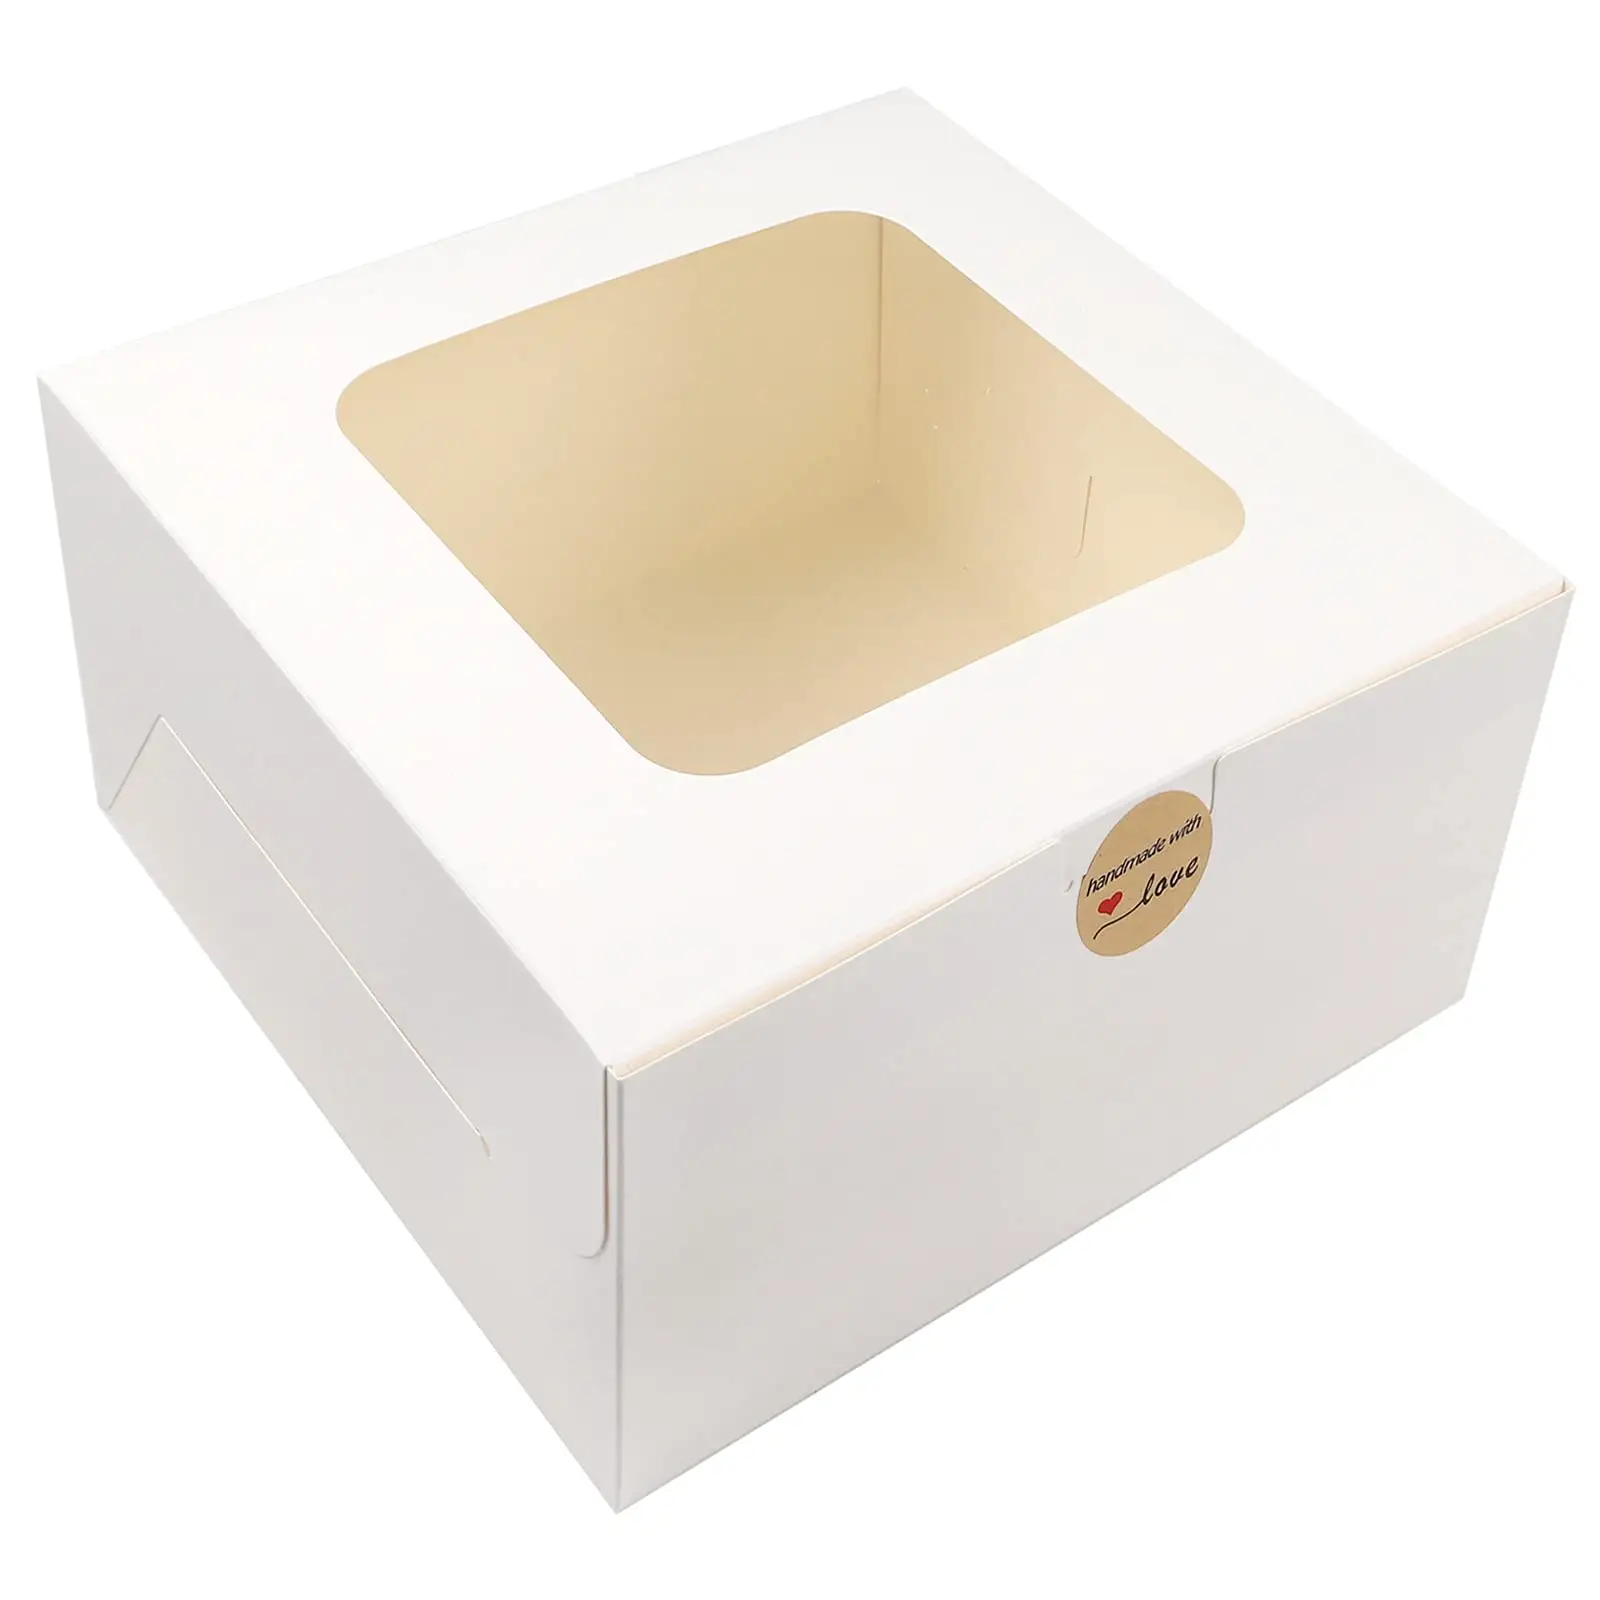 Caixa de embalagem descartável para bolo, caixa quadrada branca de papelaria 12x12x6 12 polegadas com janela